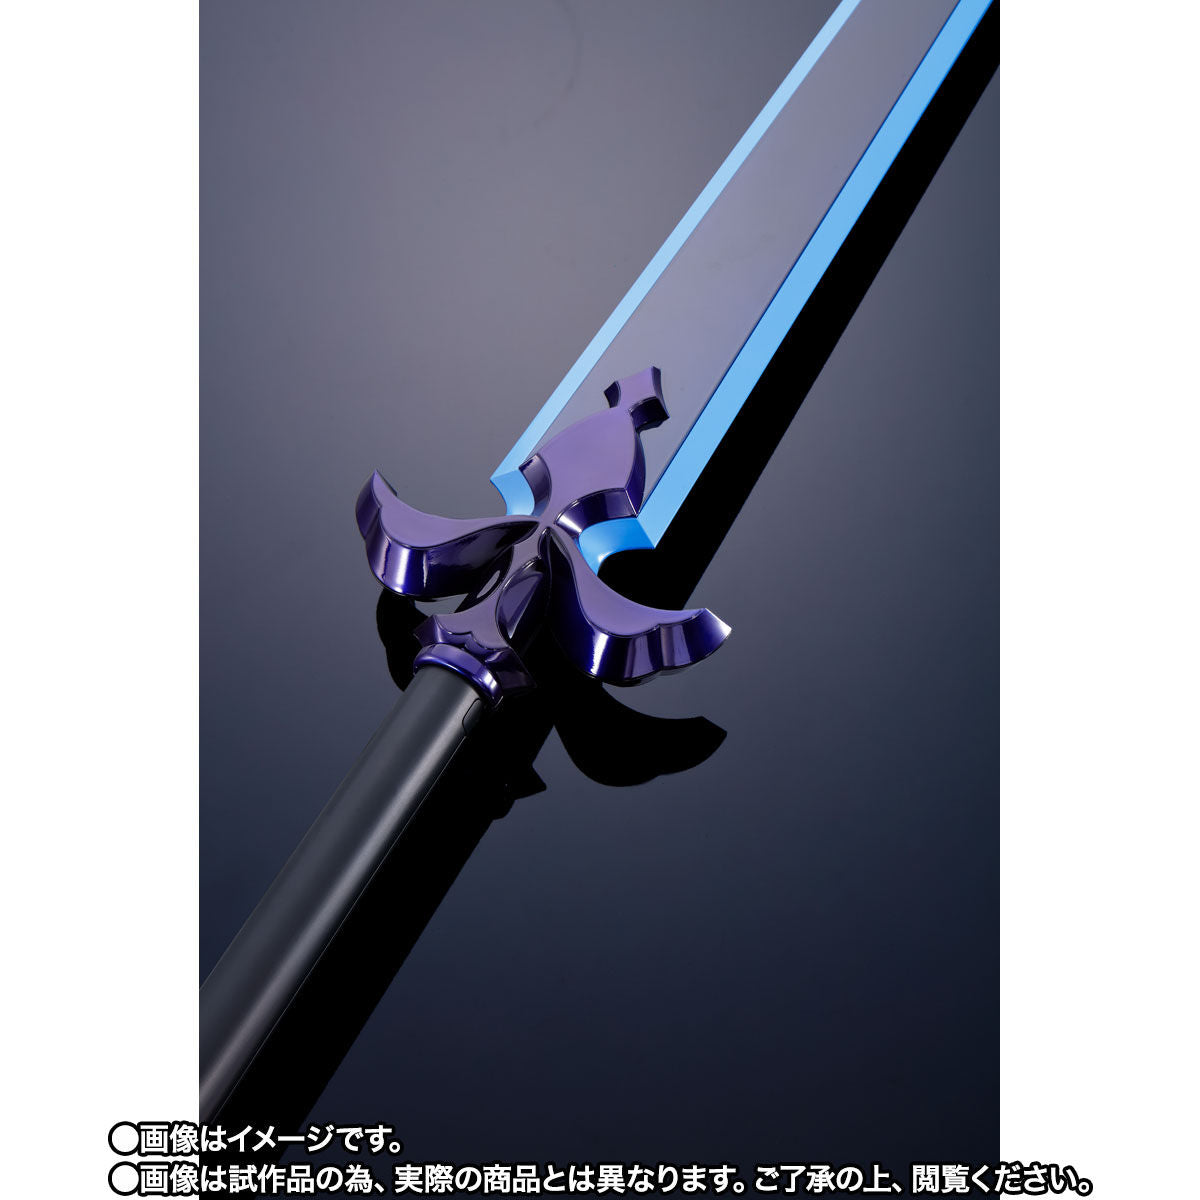 Proplica Sword Art Online Night Sky Sword